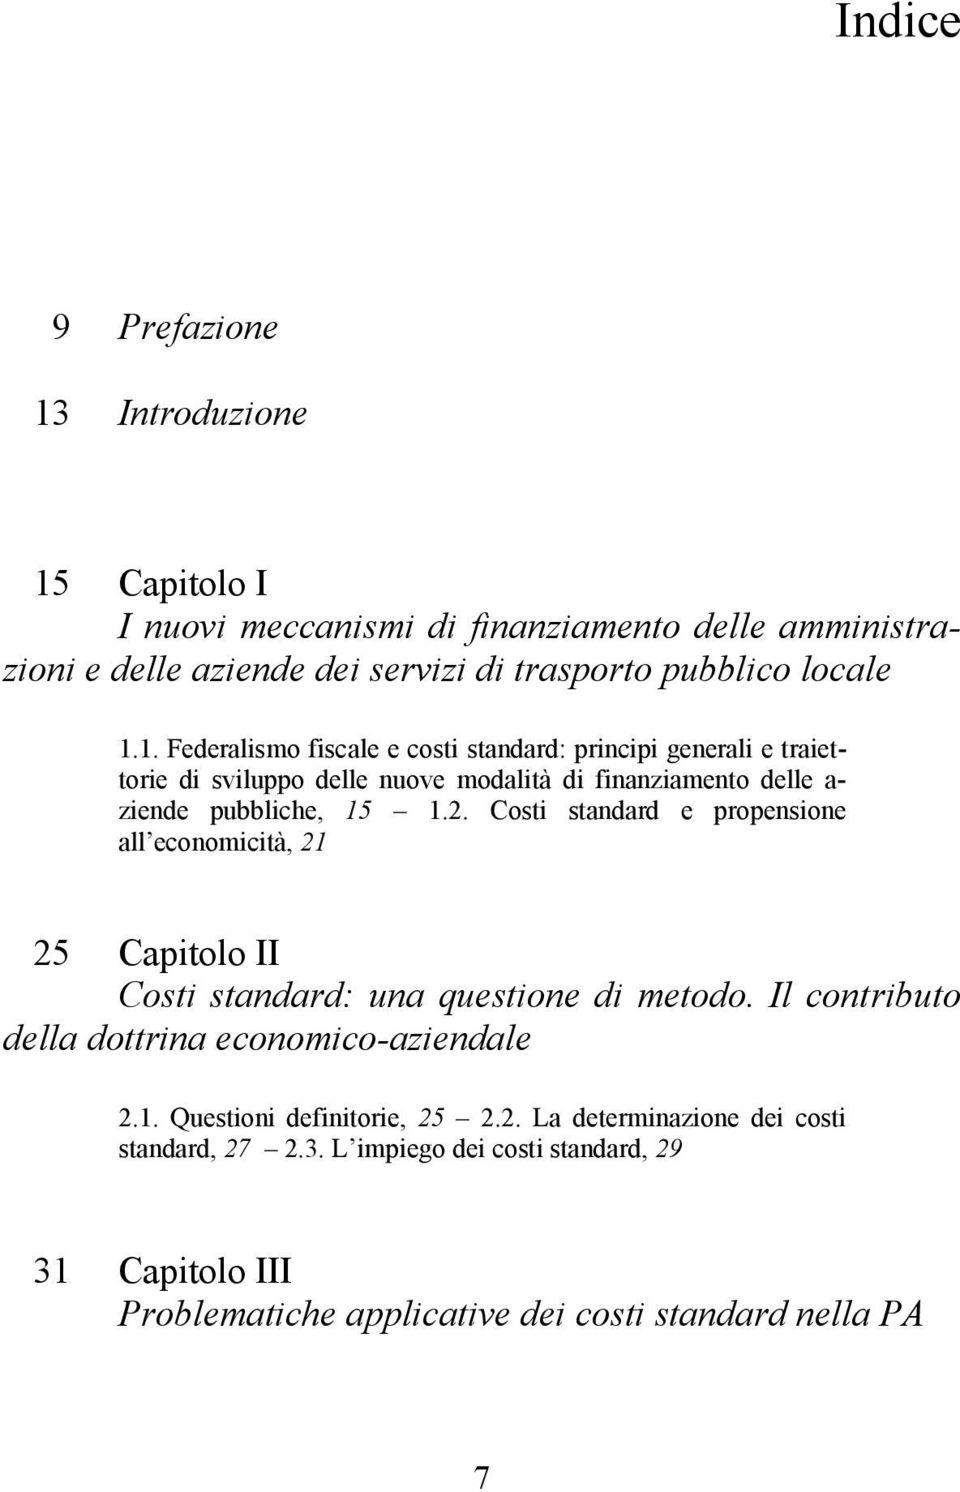 Costi standard e propensione all economicità, 21 25 Capitolo II Costi standard: una questione di metodo. Il contributo della dottrina economico-aziendale 2.1. Questioni definitorie, 25 2.